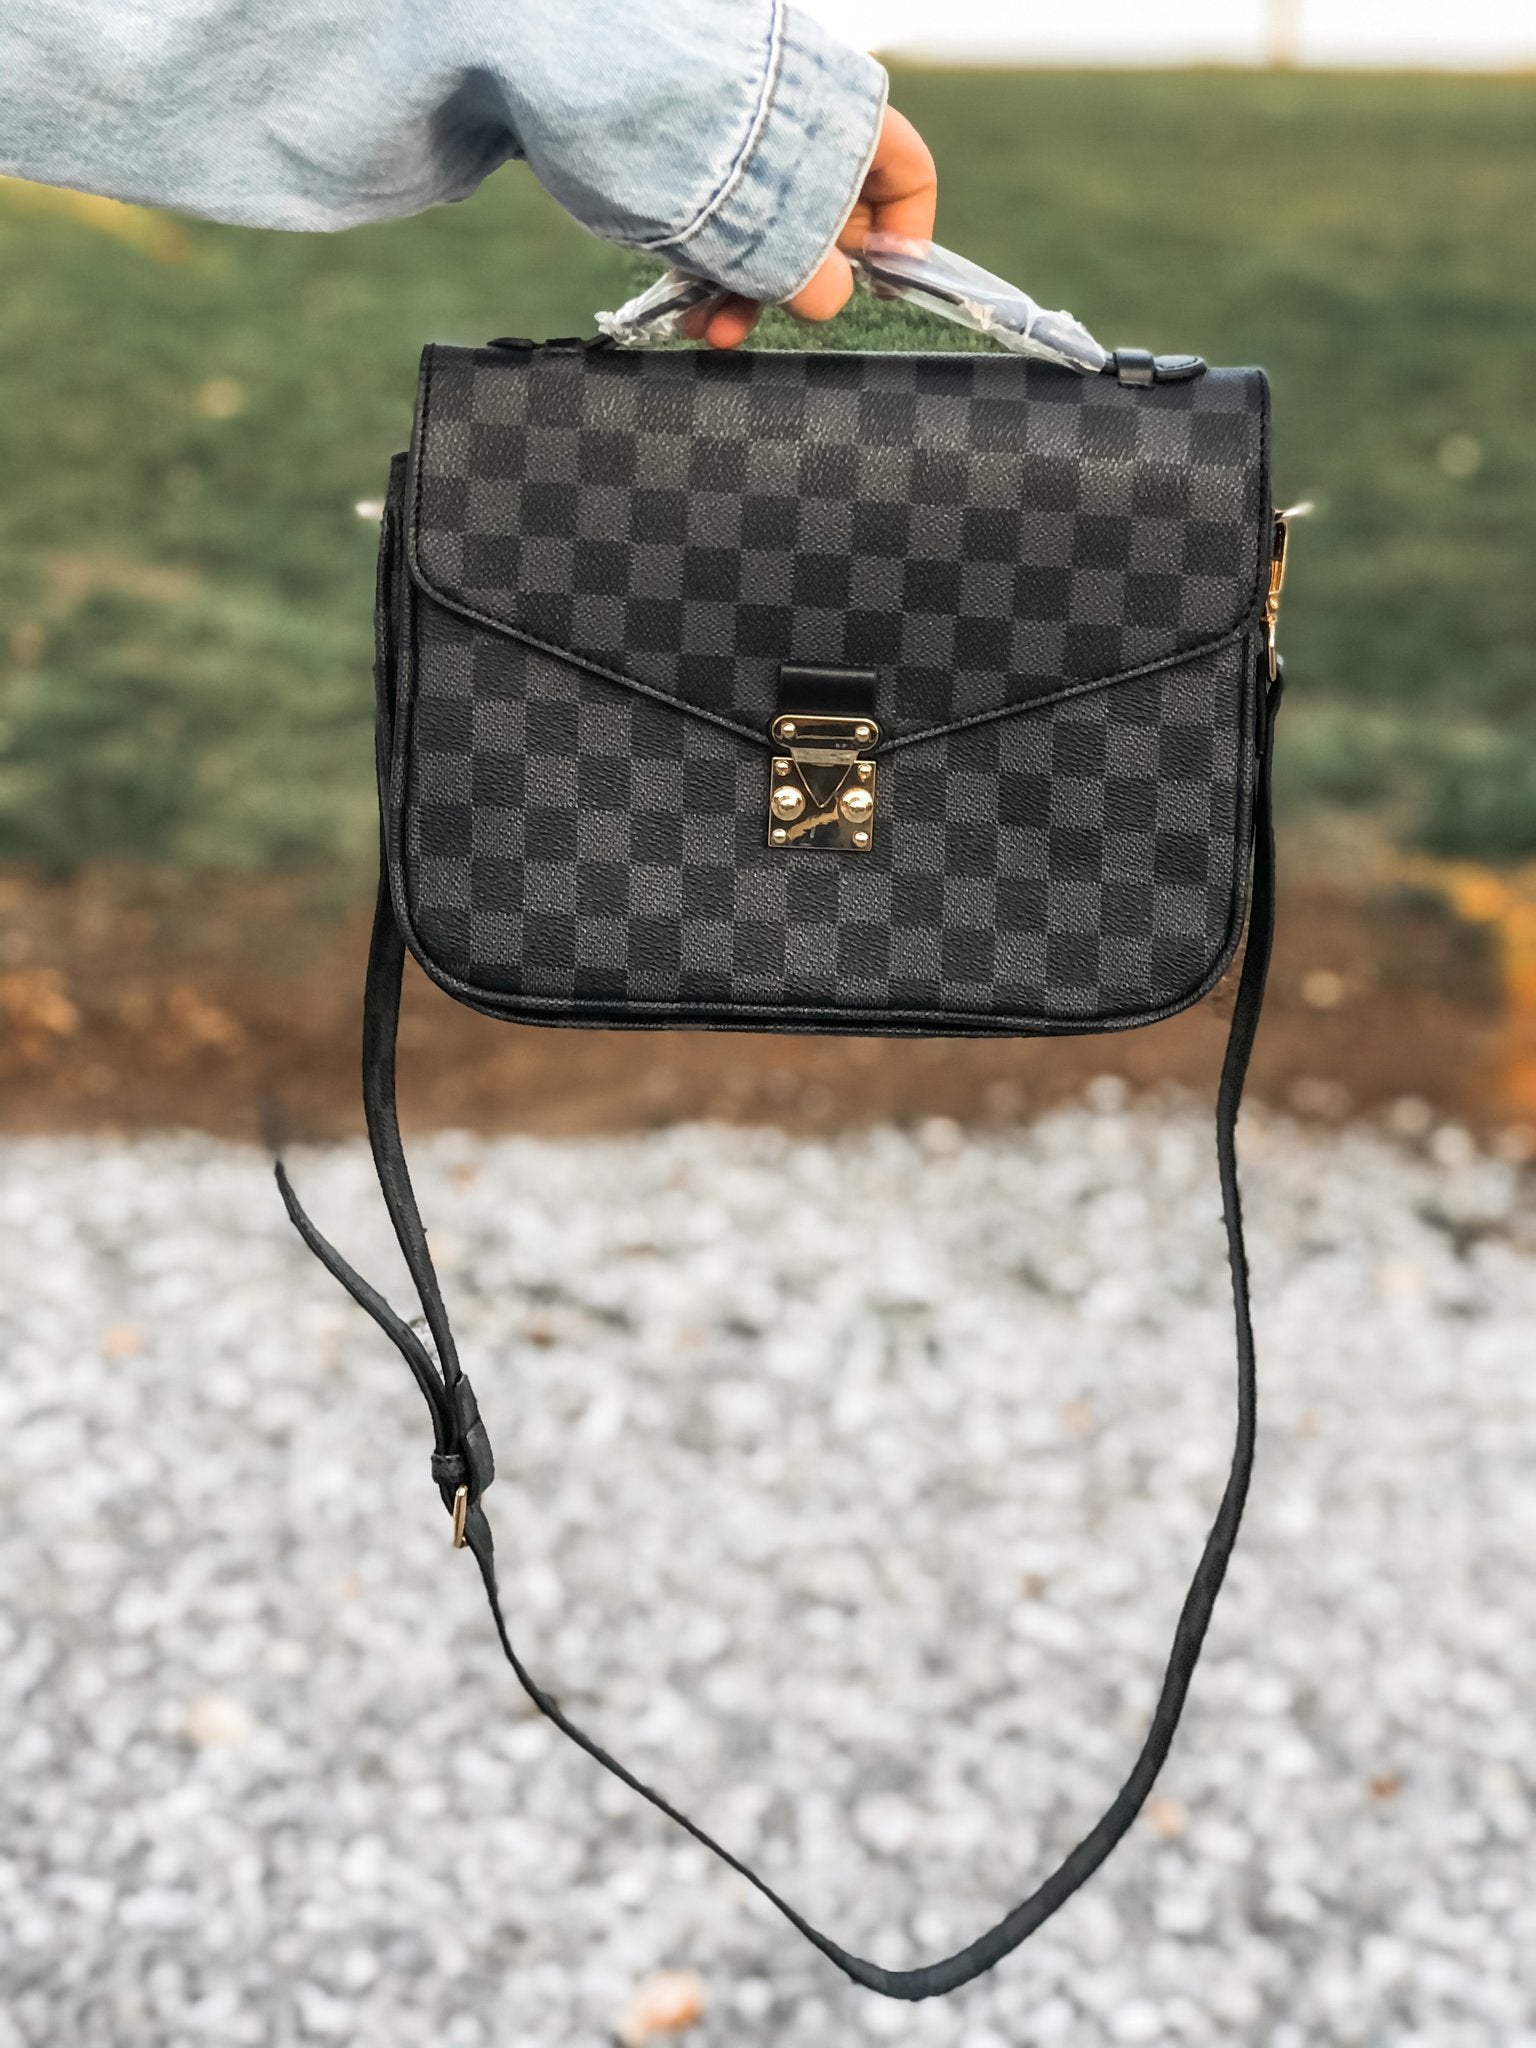 Louis Vuitton Adjustable Strap Messenger Bags